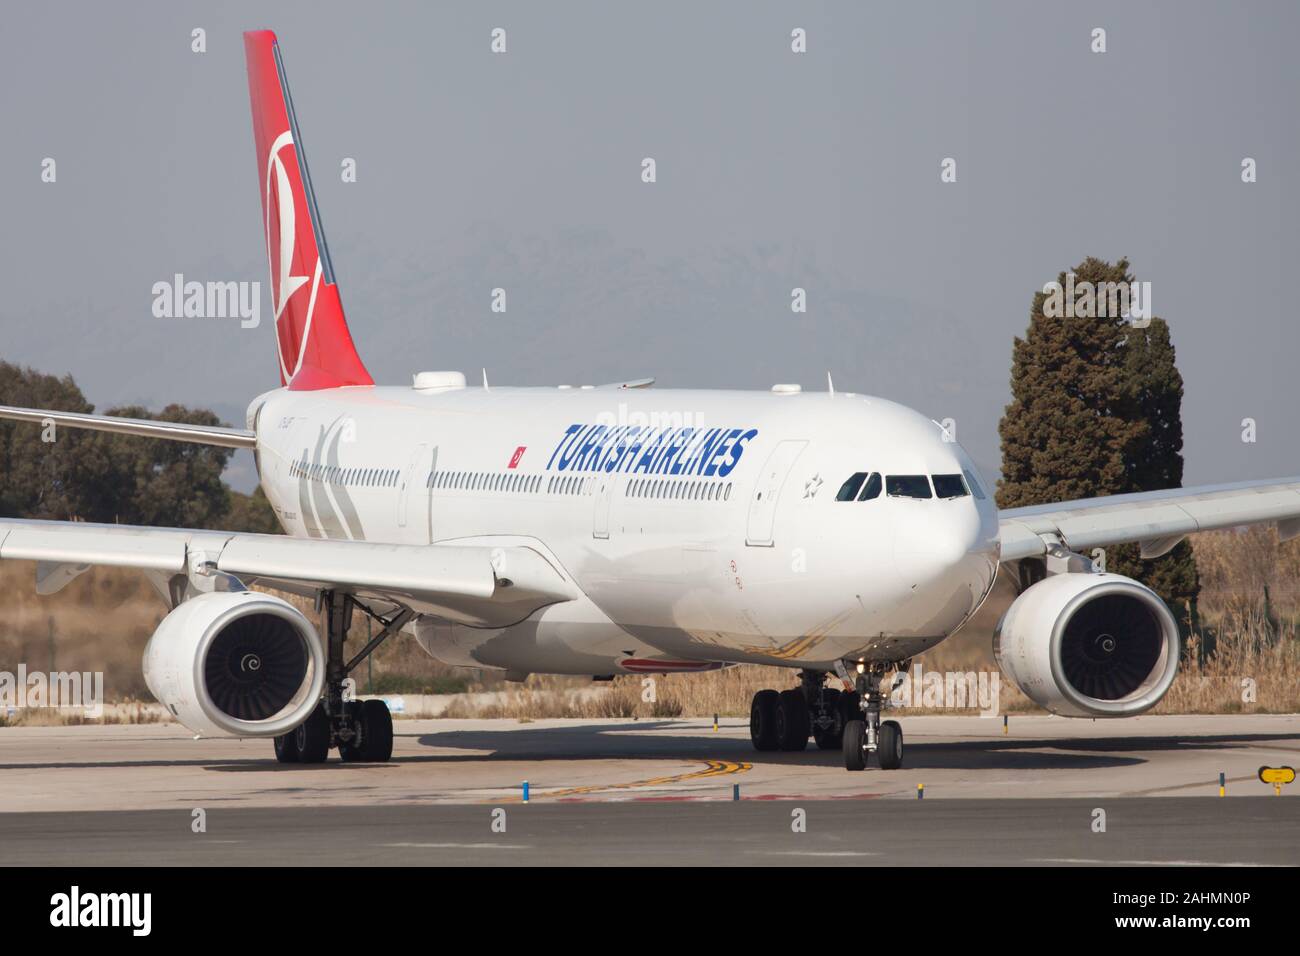 Barcelona, Spanien - 24. Februar 2019: Turkish Airlines Airbus A330-300 auf der Rollbahn am Flughafen El Prat in Barcelona, Spanien. Stockfoto